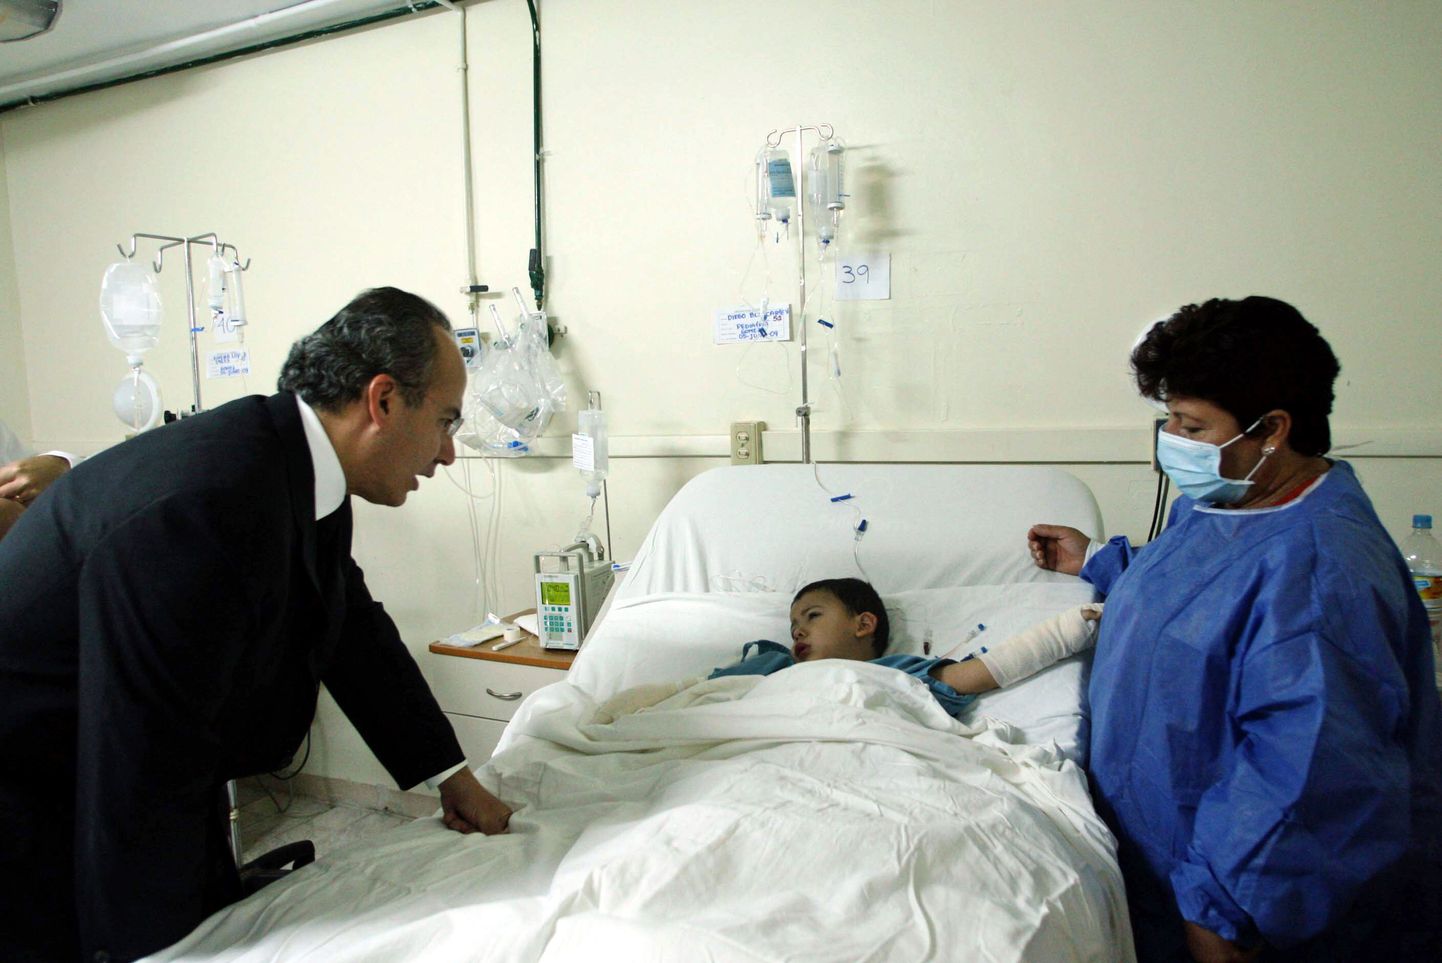 Mehhiko president Felipe Calderon räägib haiglas ühe põlengus vigastada saanud väikese lapsega.